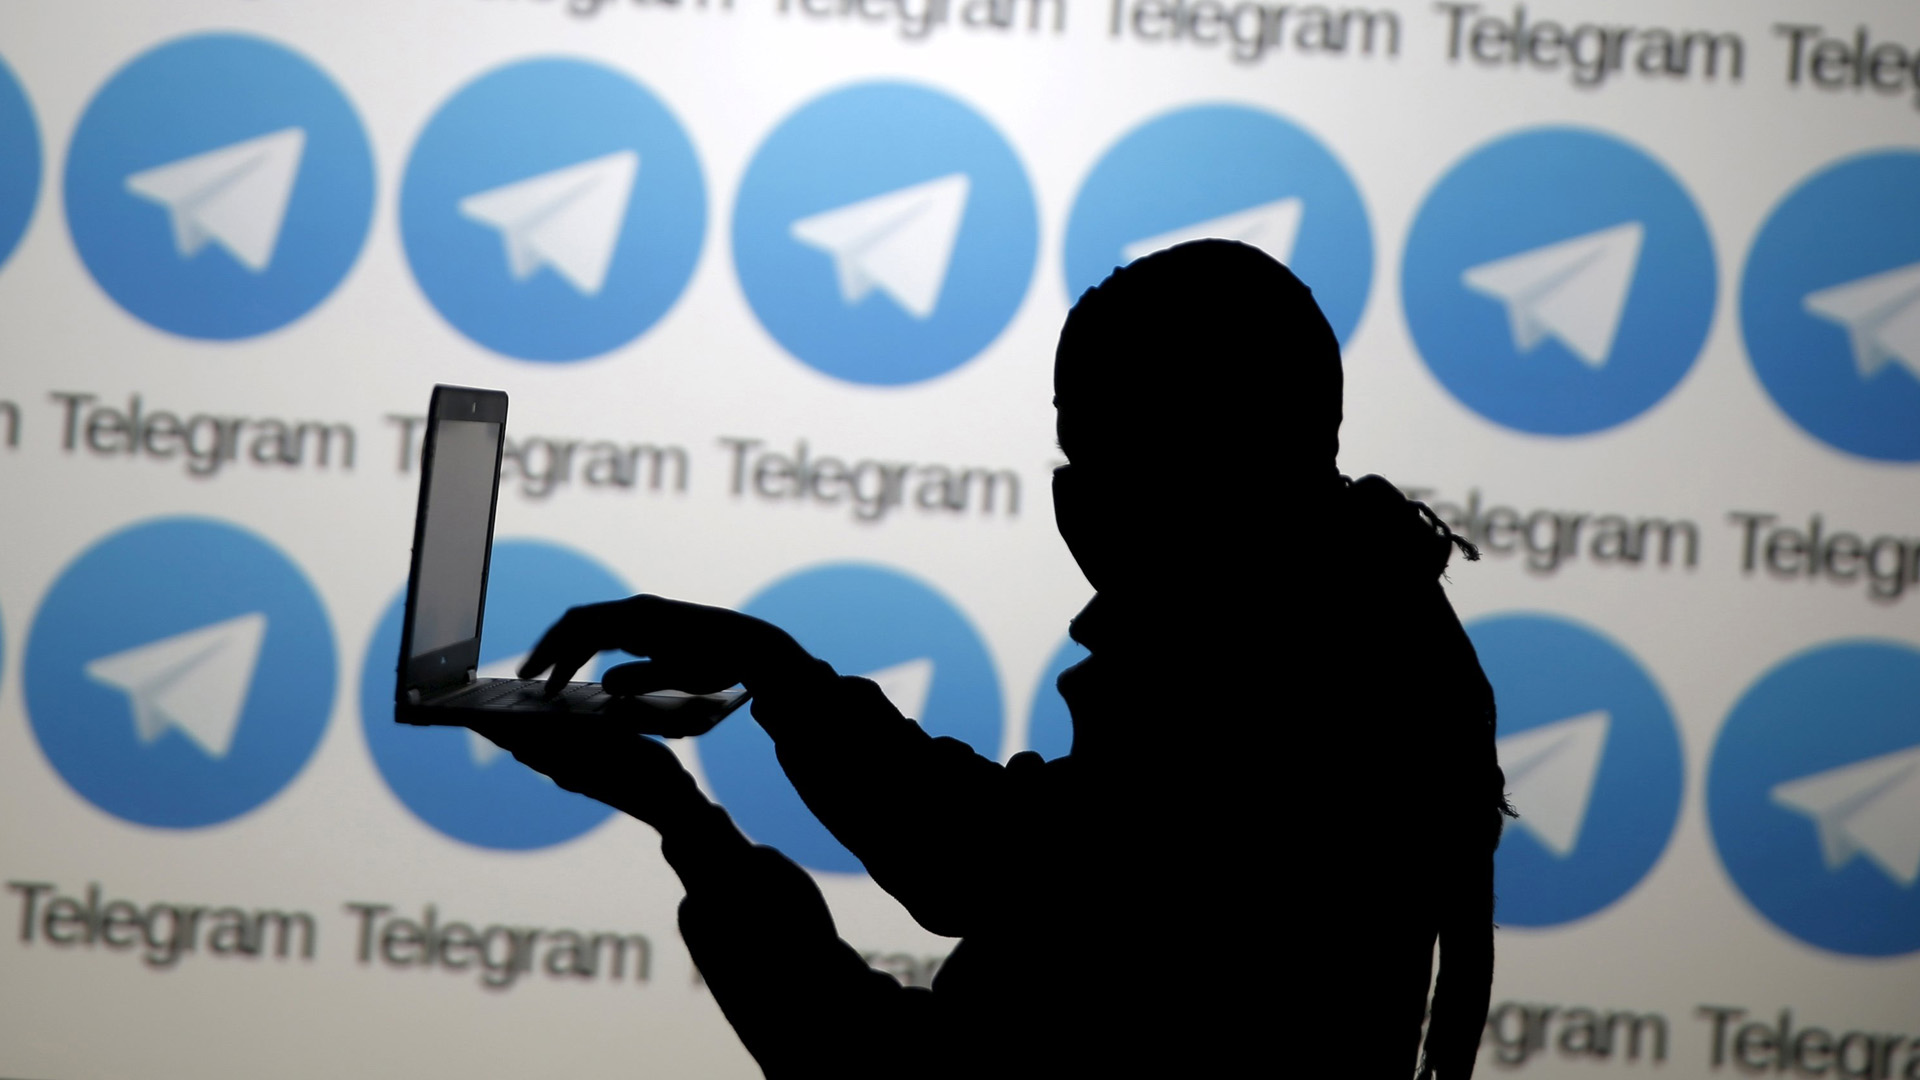 Los ministros de Interior de ambas naciones exigieron a Telegram poder romper su cifrado si es necesario